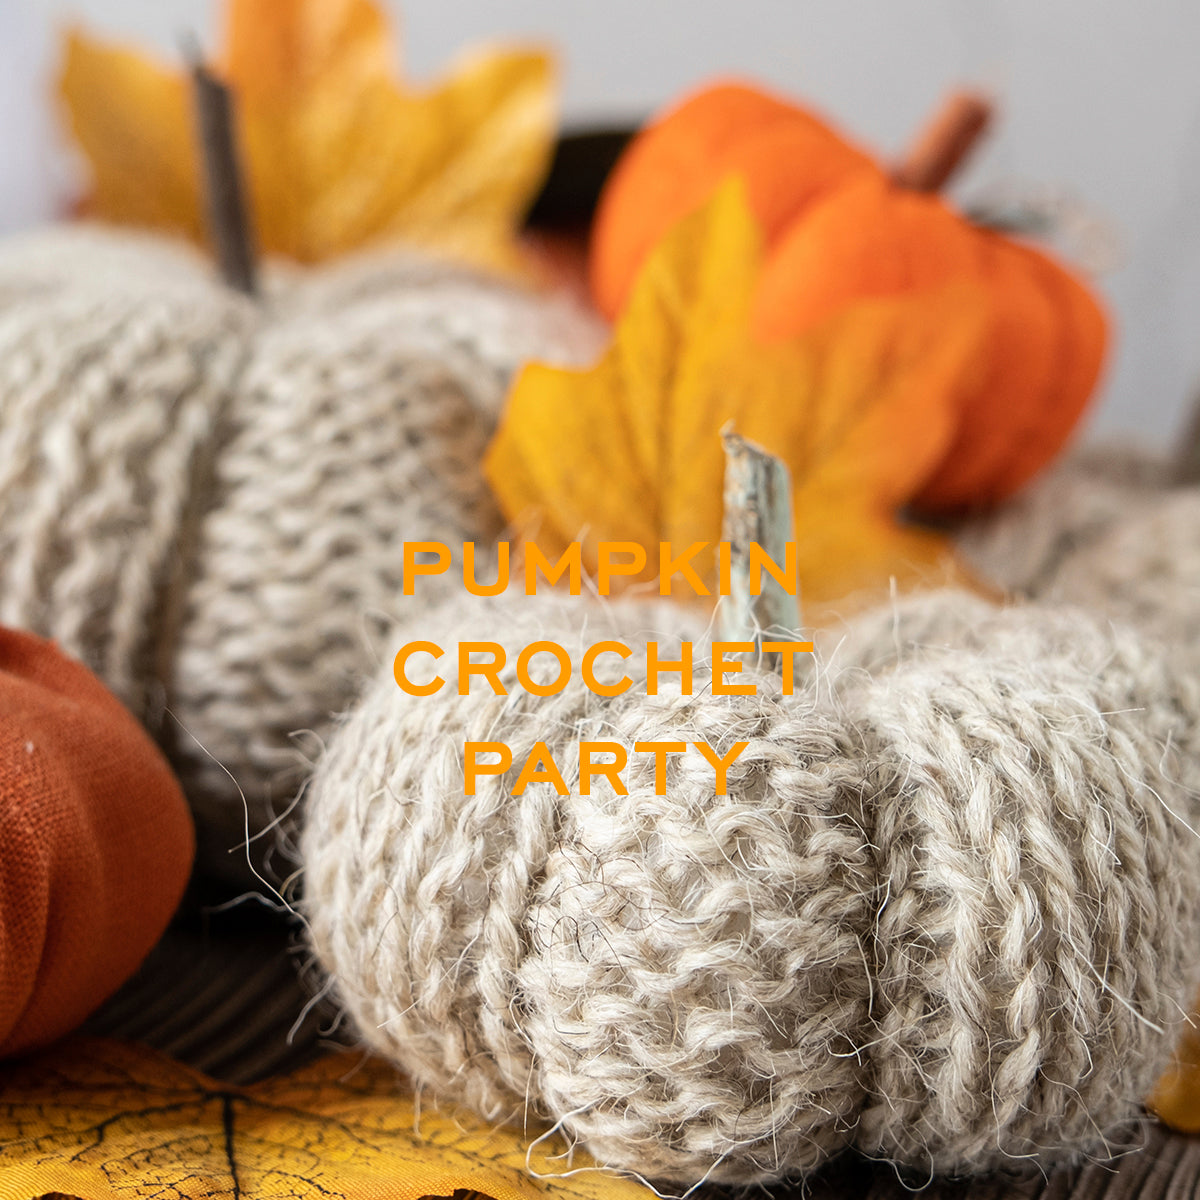 Pumpkin crochet party